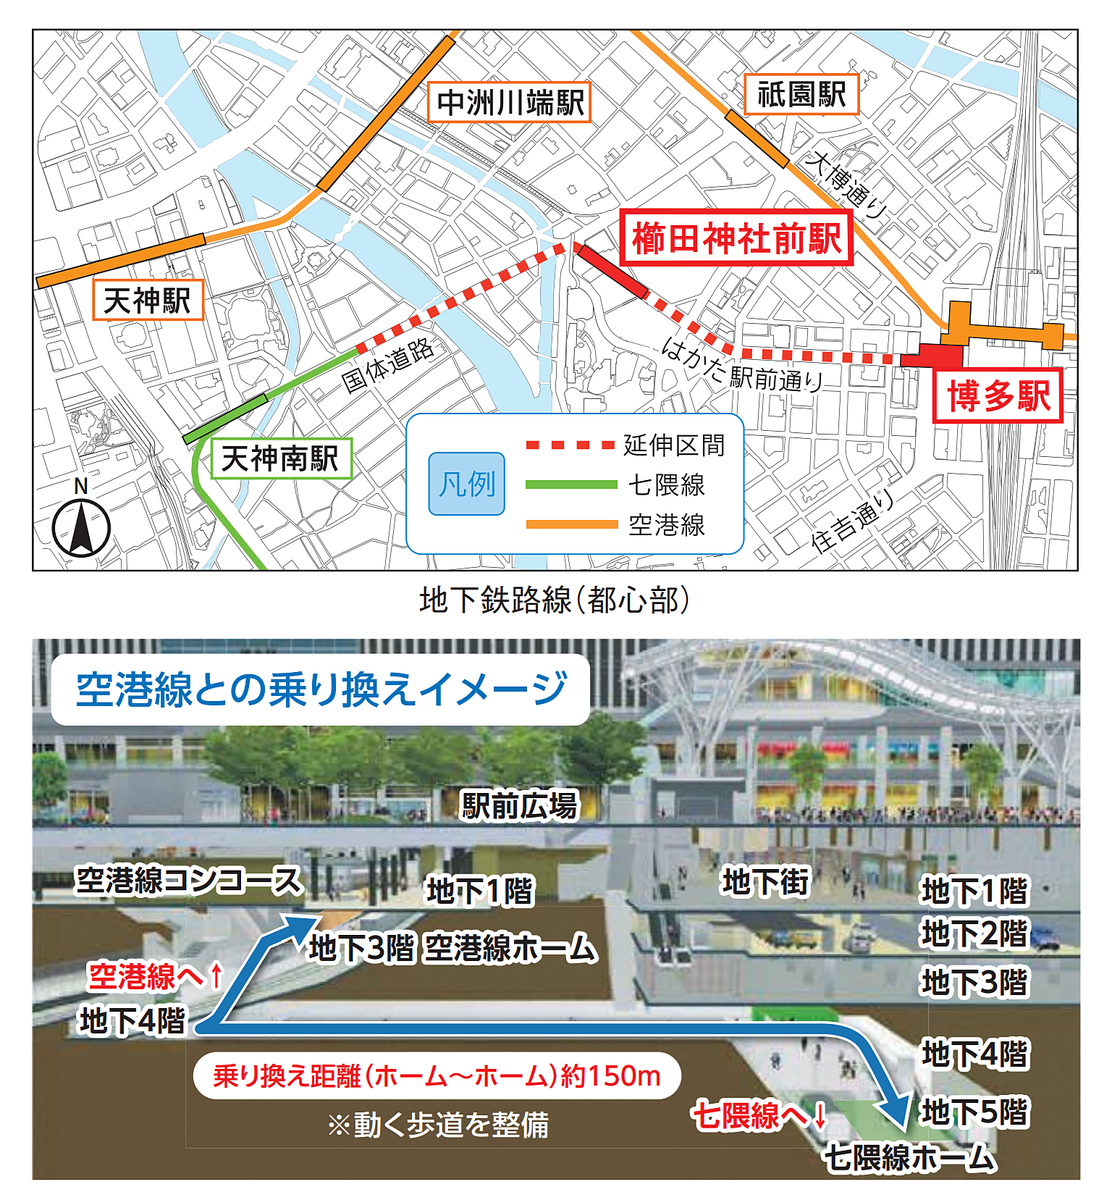 福岡市地下鉄七隈線の新しい駅の名称が決まりました